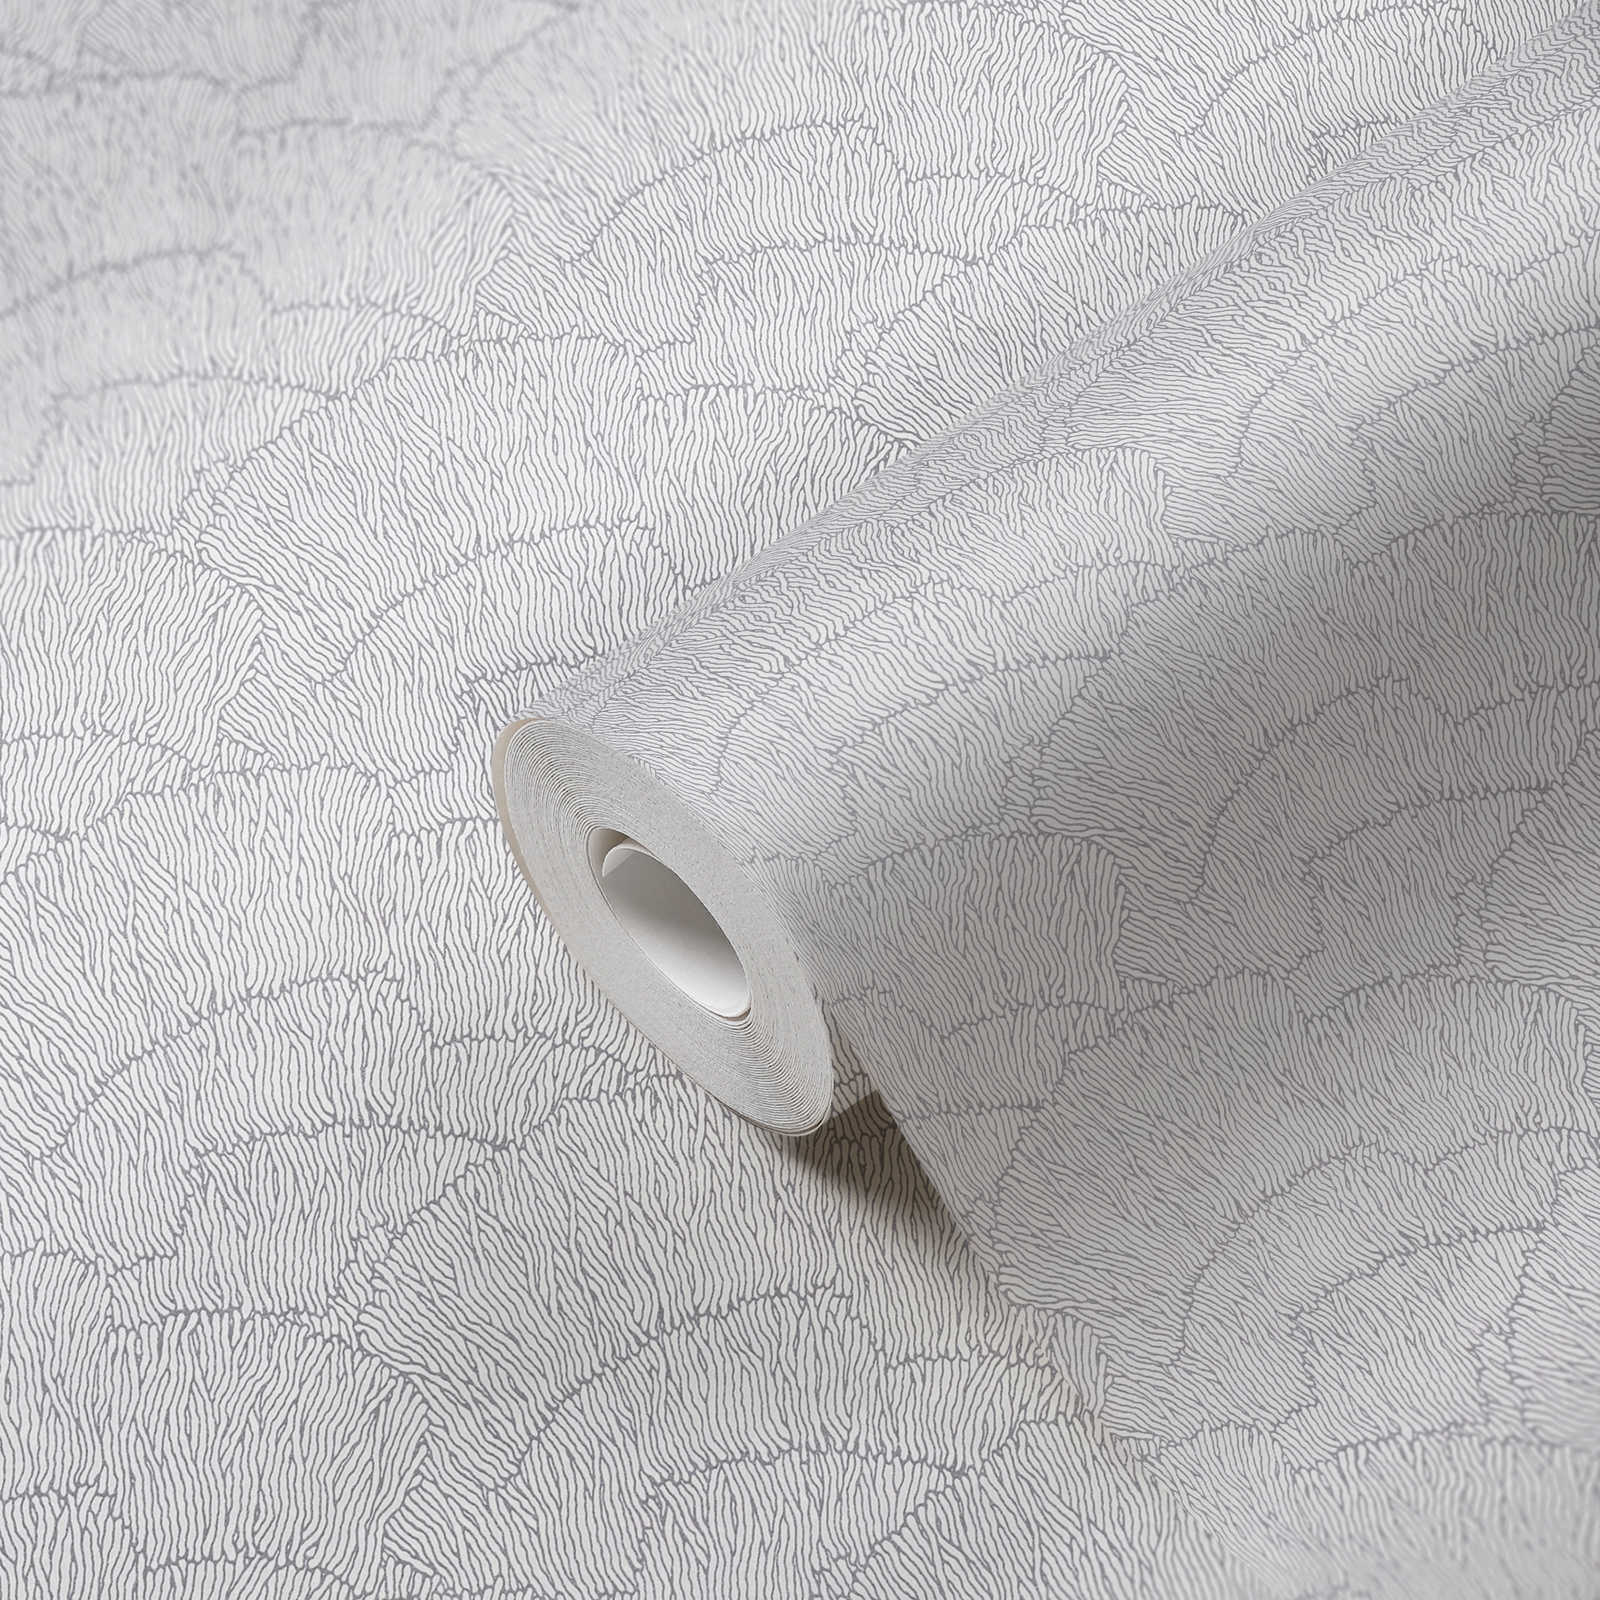             Carta da parati in tessuto non tessuto con motivo astratto - argento, bianco, metallizzato
        